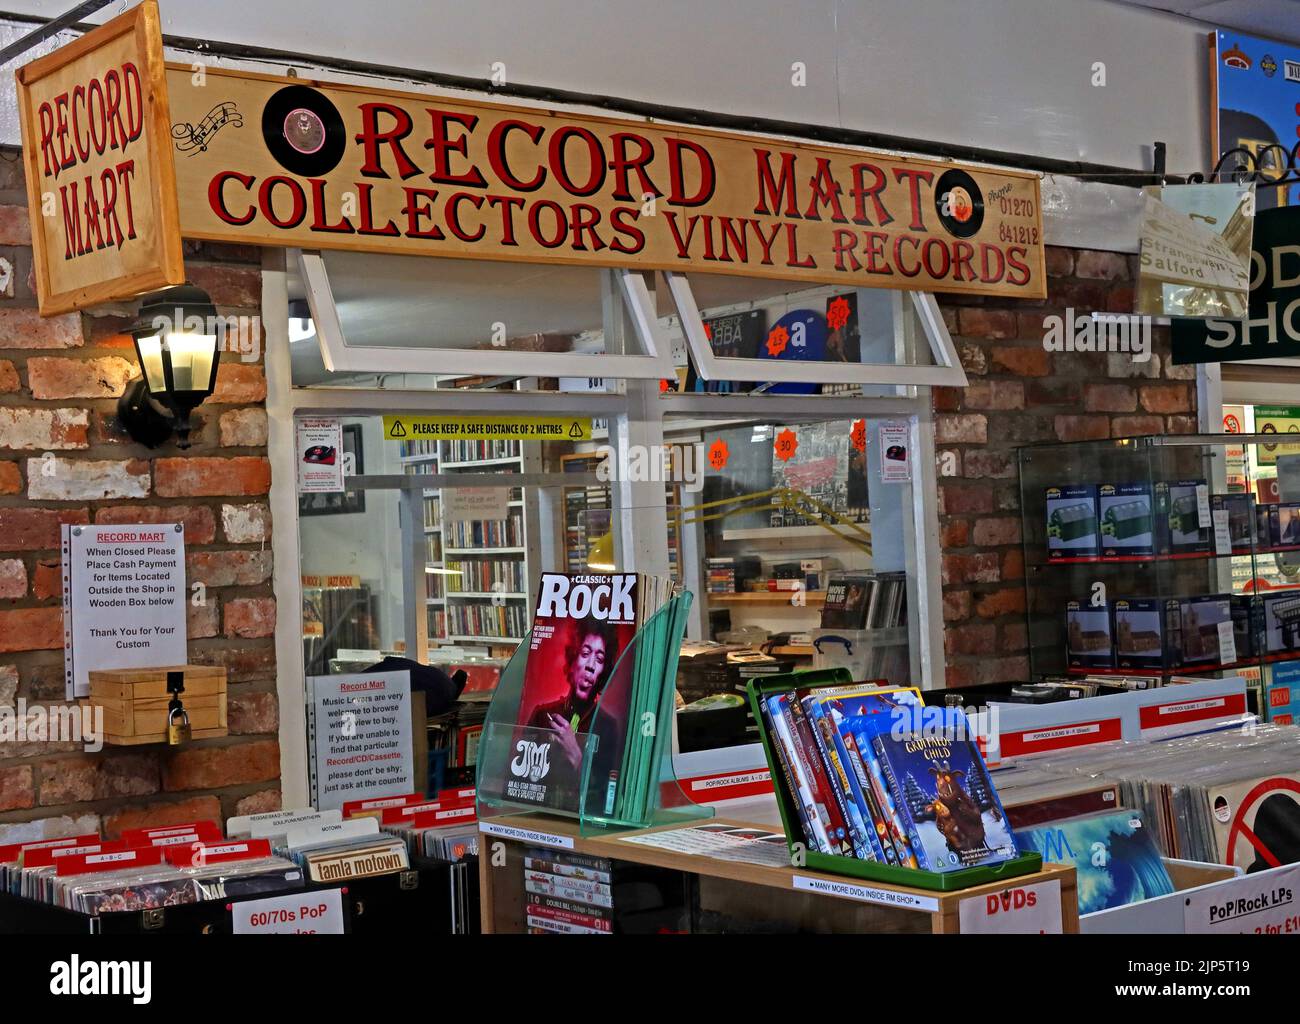 Collectionneurs de vinyle à Record Mart, un magasin indépendant de disques et de vinyle Dagfields, près d'Audlem, Nantwich, Crewe , Cheshire, ANGLETERRE, ROYAUME-UNI, CW5 7LG Banque D'Images